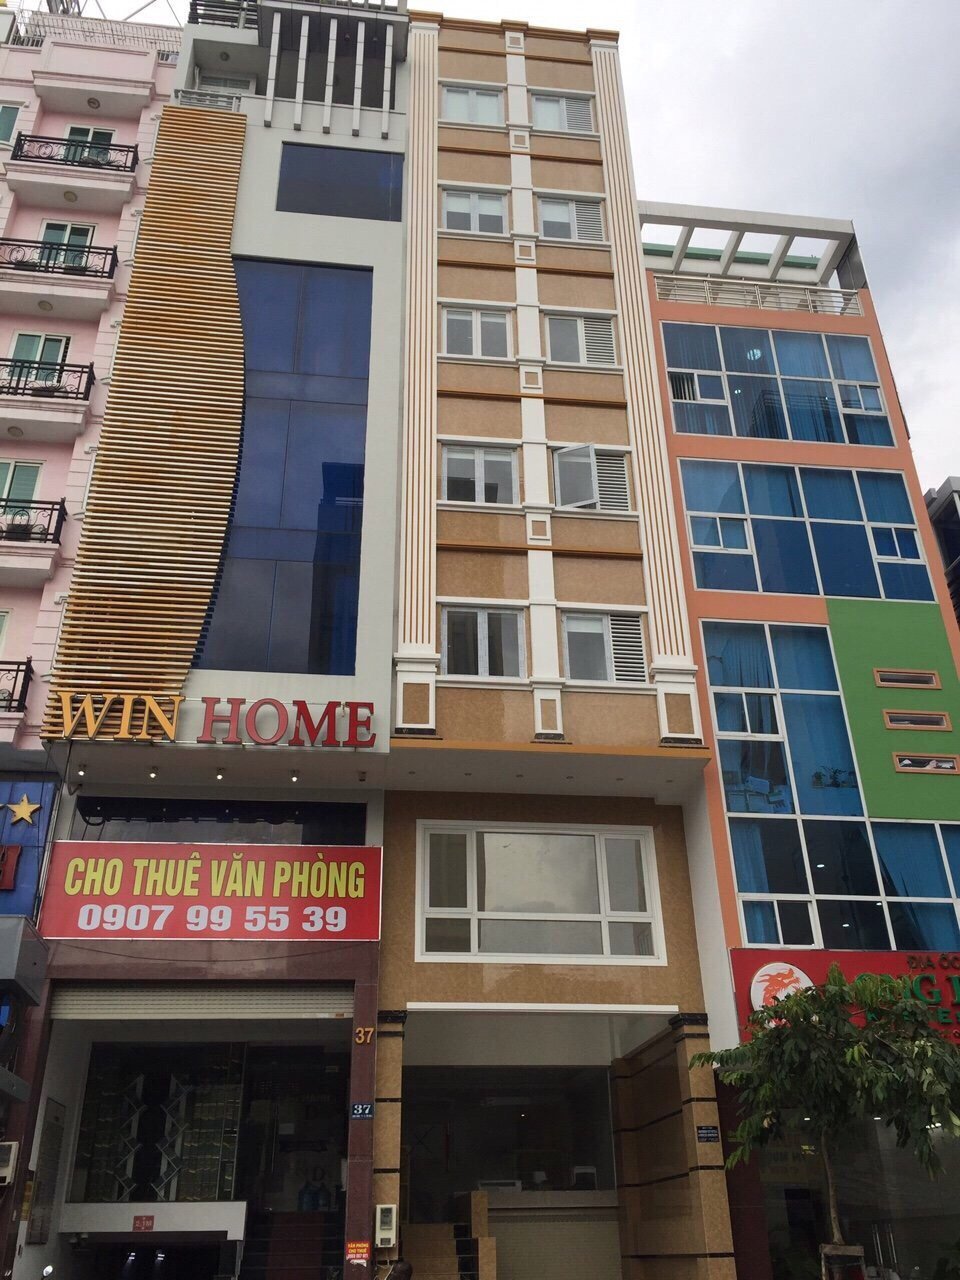 Nhà cho thuê nguyên căn mới xây 84T đường Trần Đình Xu Quận 1 gần Chợ Bến Thành - Trần Hưng Đạo